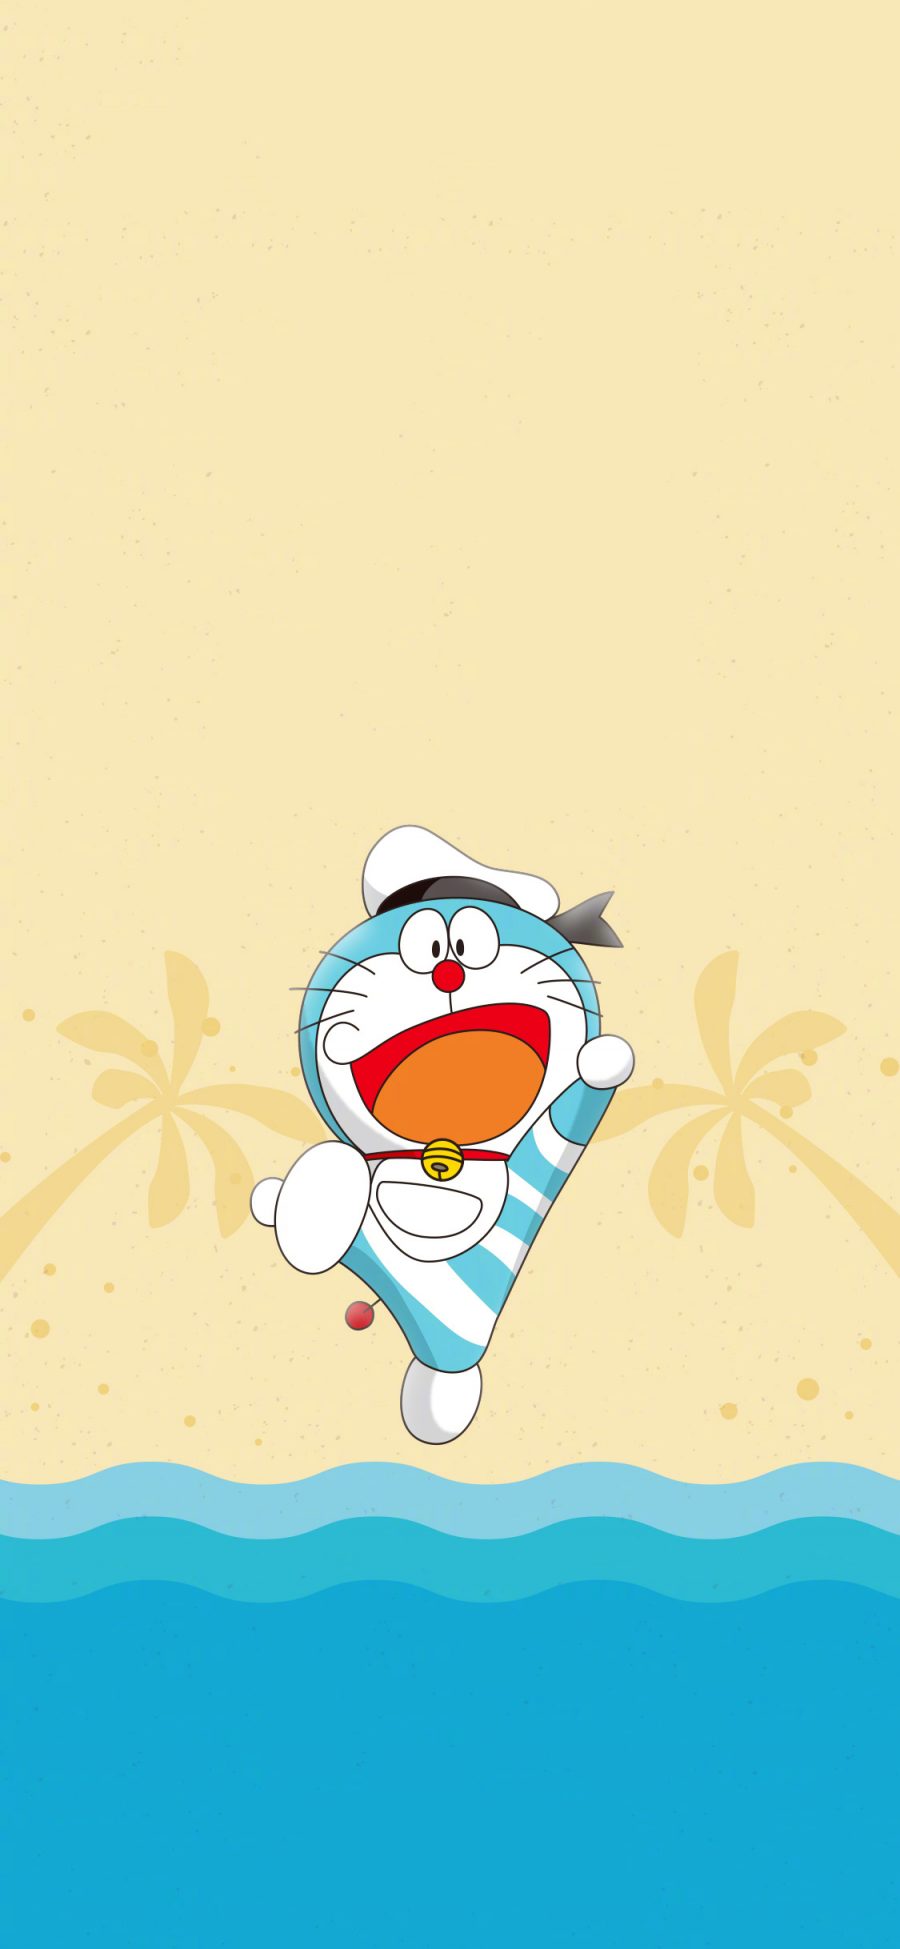 [2436×1125]哆啦A梦 大雄的金银岛 带我回家 动画片 卡通 电影 海报 叮当猫 沙滩 苹果手机动漫壁纸图片